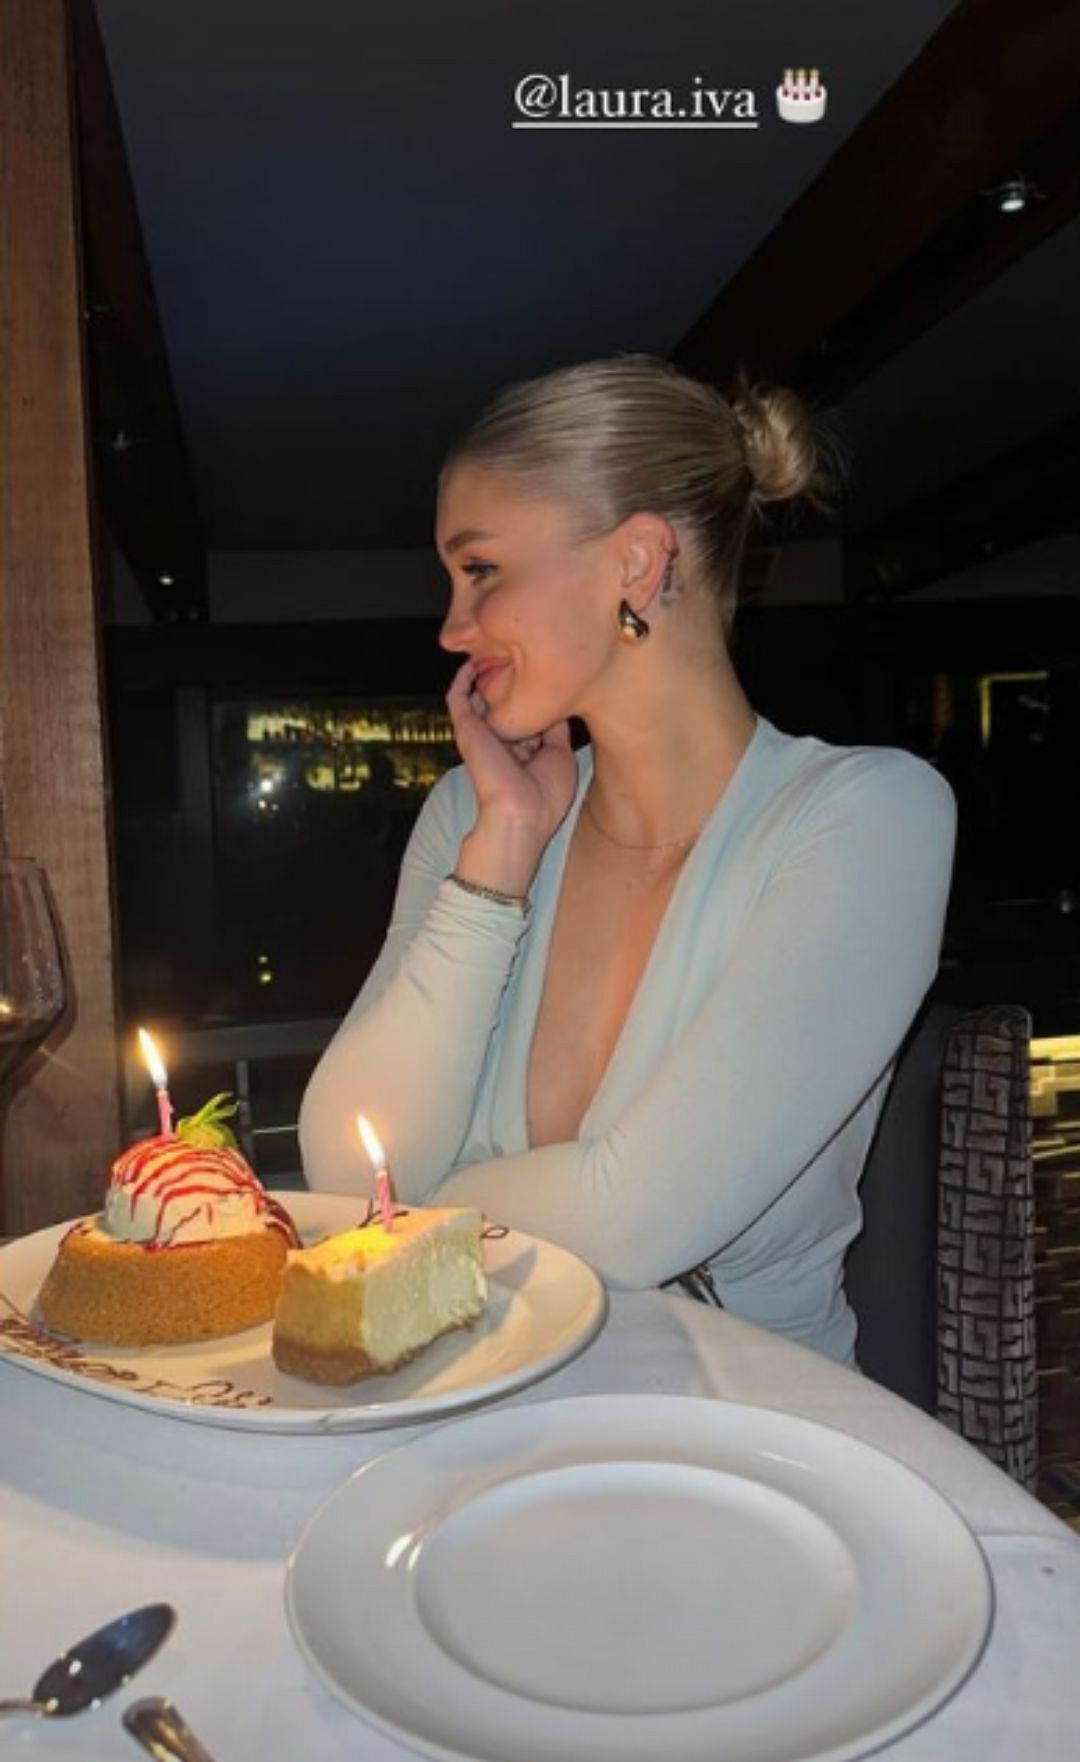 Laura Ivaniukas celebrating her 25th birthday